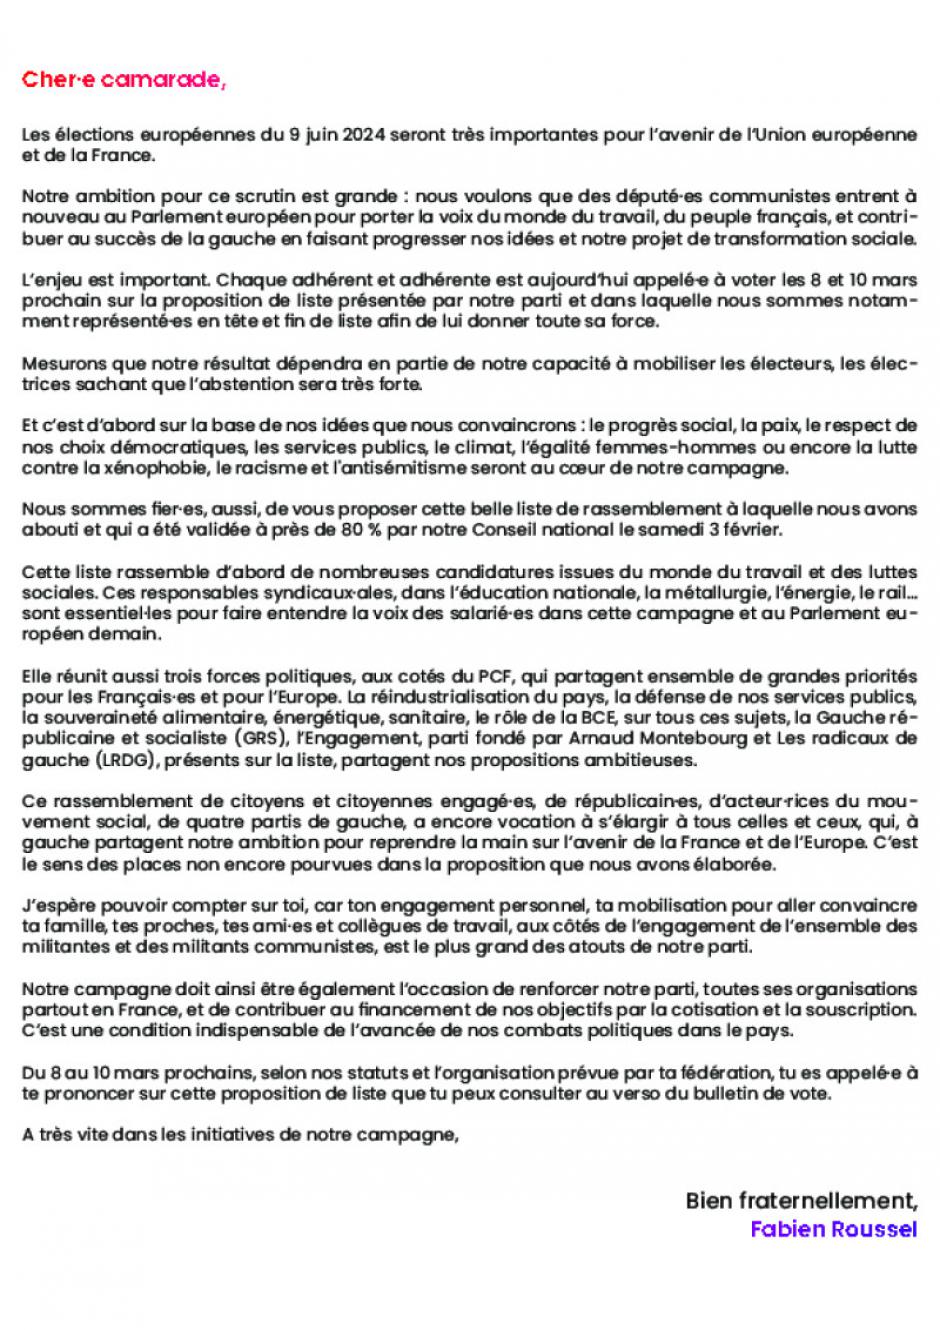 Élections européennes du 9 juin 2024 : lettre de Fabien Roussel aux adhérent·e·s - PCF, 8 février 2024